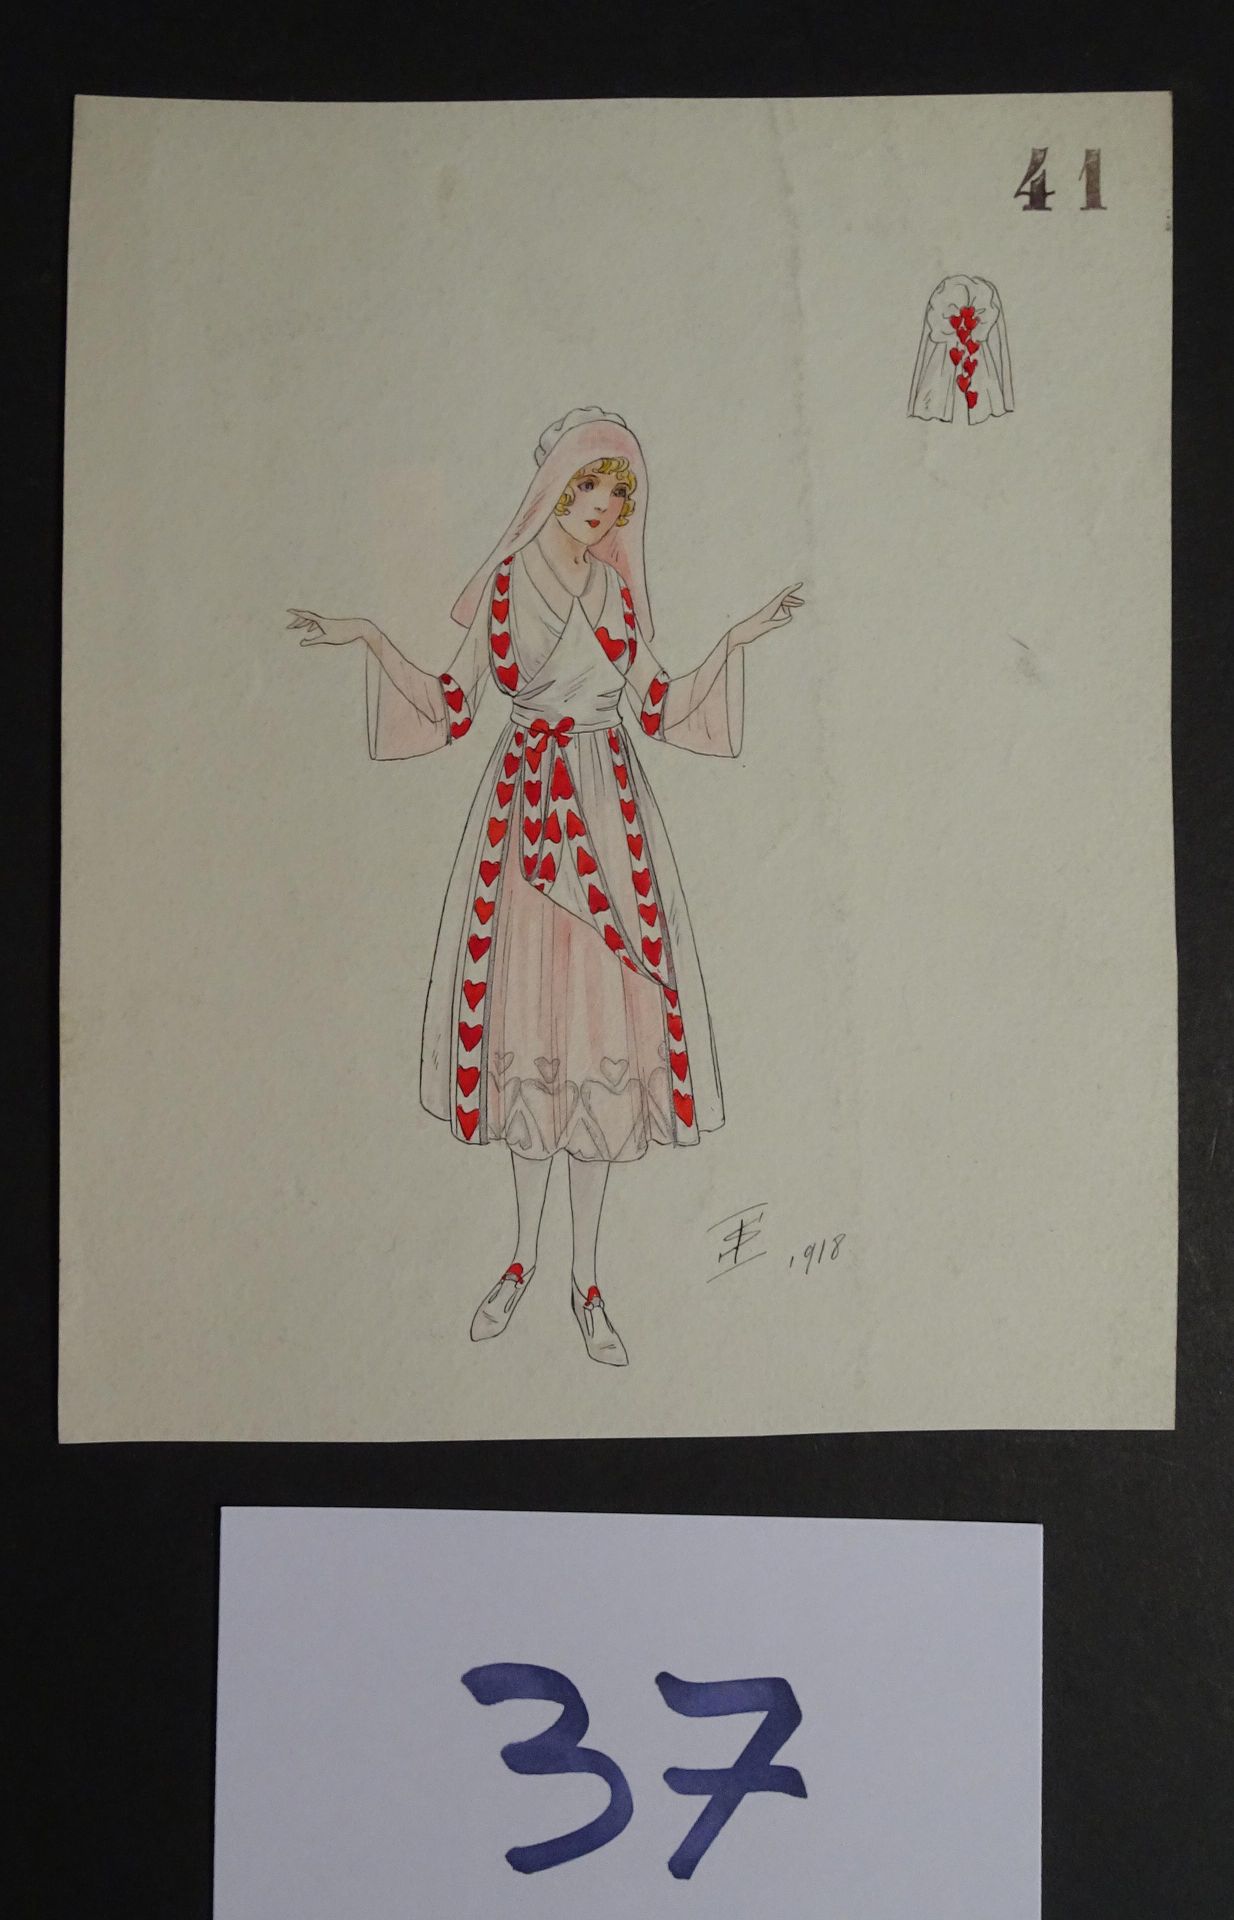 SOKOLOFF SOKOLOFF IGOR (inizio XX secolo) 

"Donna con un vestito a cuore". Penn&hellip;